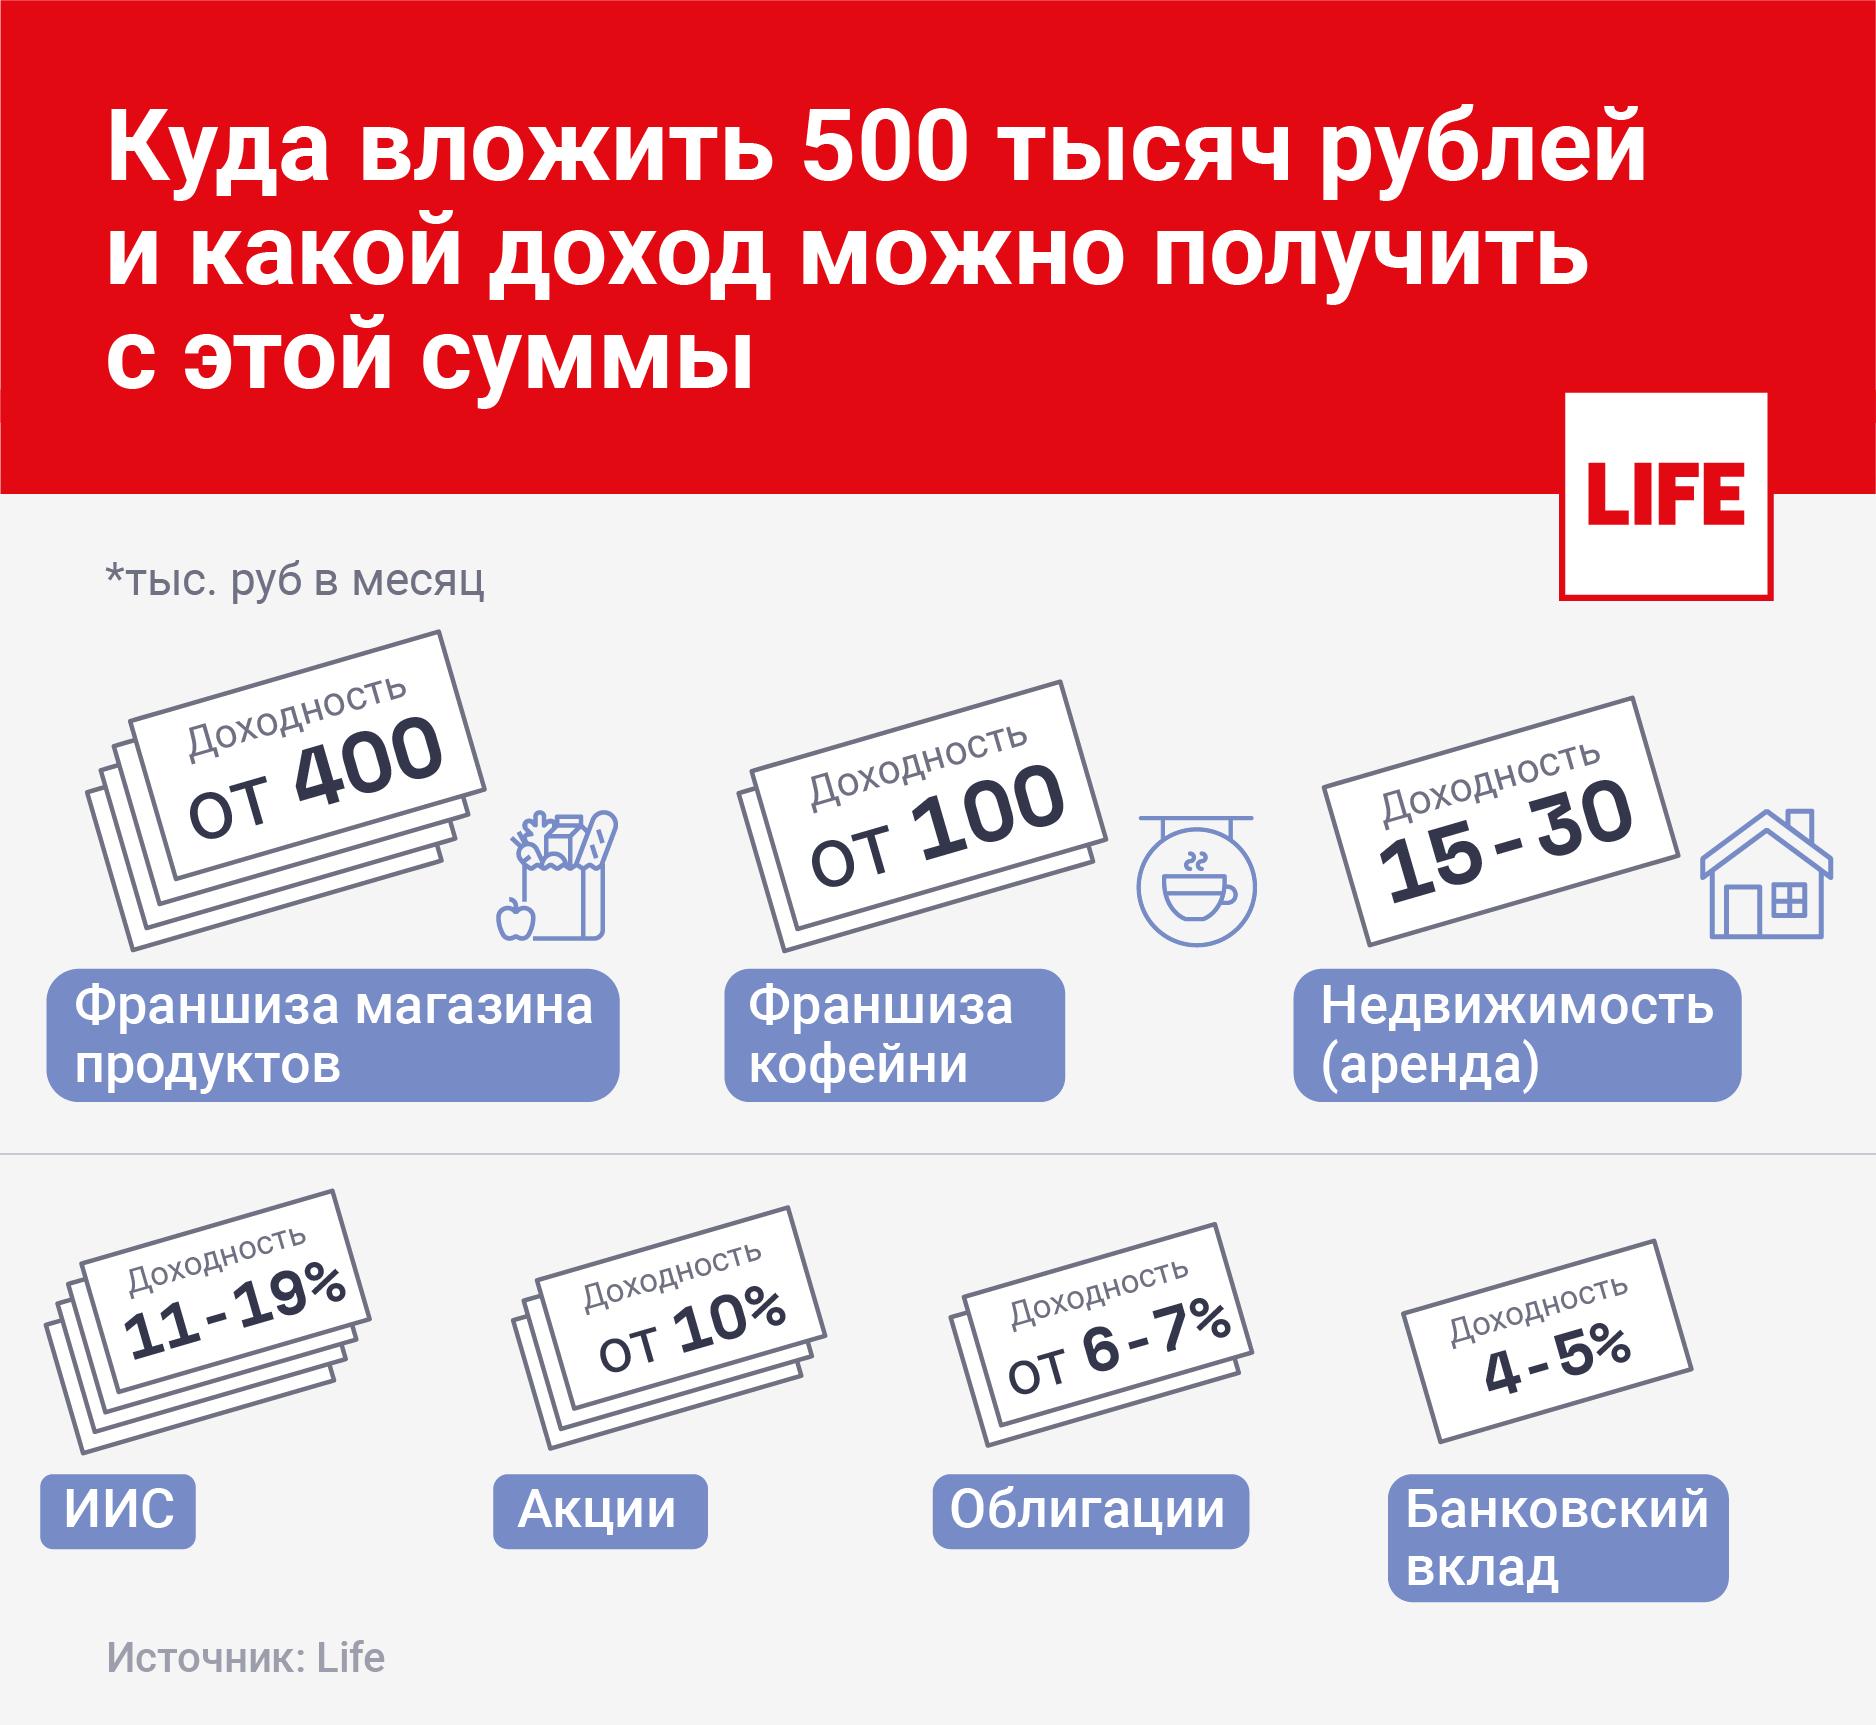 Вы узнаете, куда можно с выгодой вложить 300000-400000 рублей, какие бизнес-идеи принесут гарантированную прибыль от вложений, как инвестировать, чтобы деньги не пропали